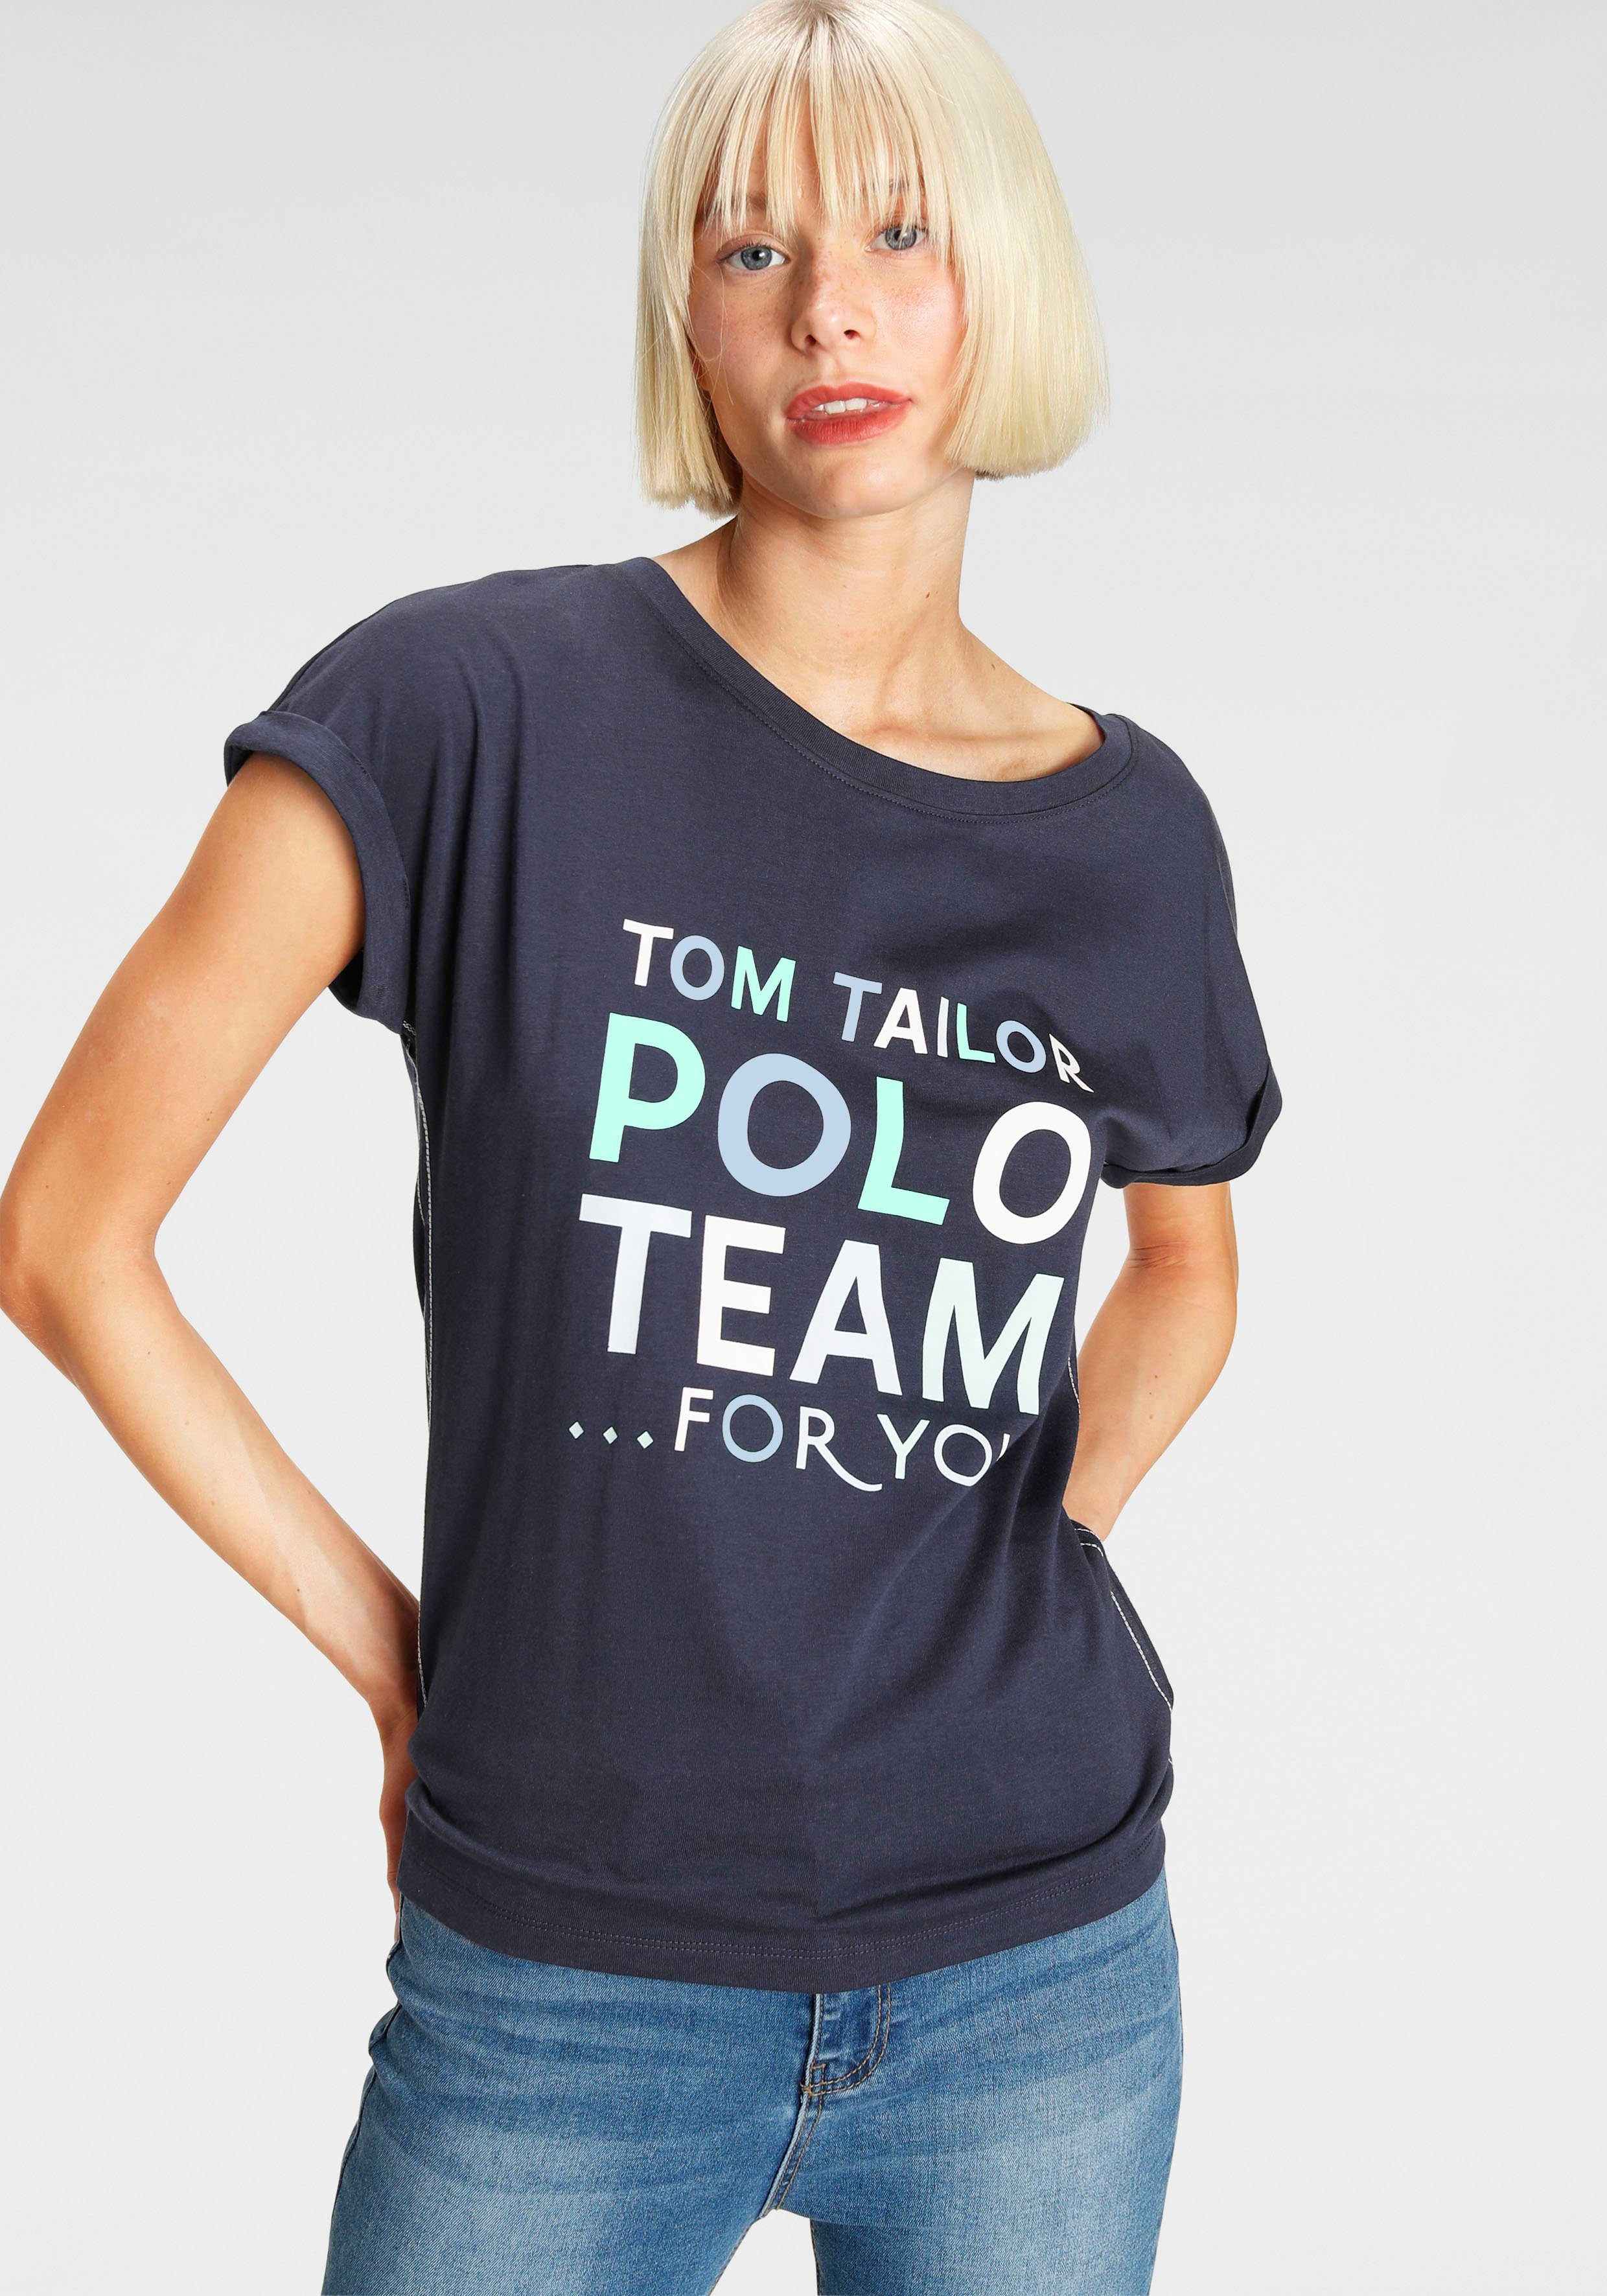 Polo TOM TAILOR Team großem Print-Shirt Logo-Print farbenfrohen